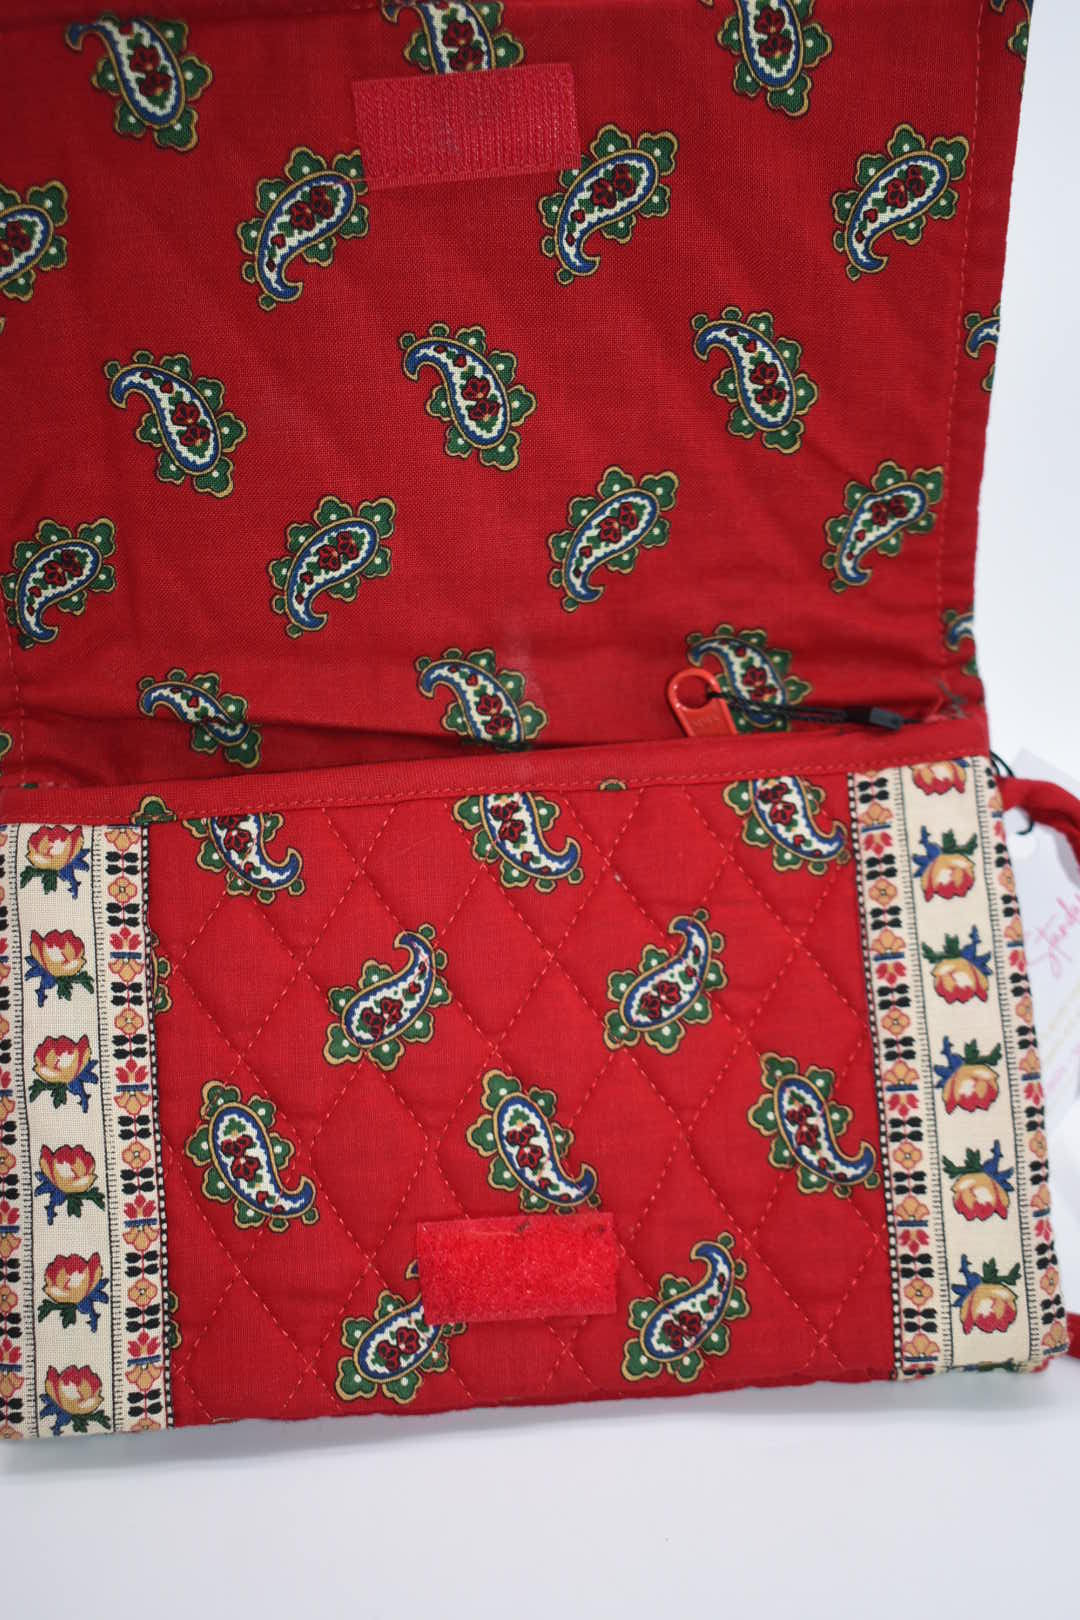 Vintage Vera Bradley Elite Crossbody Bag in "Red - 1991" Pattern